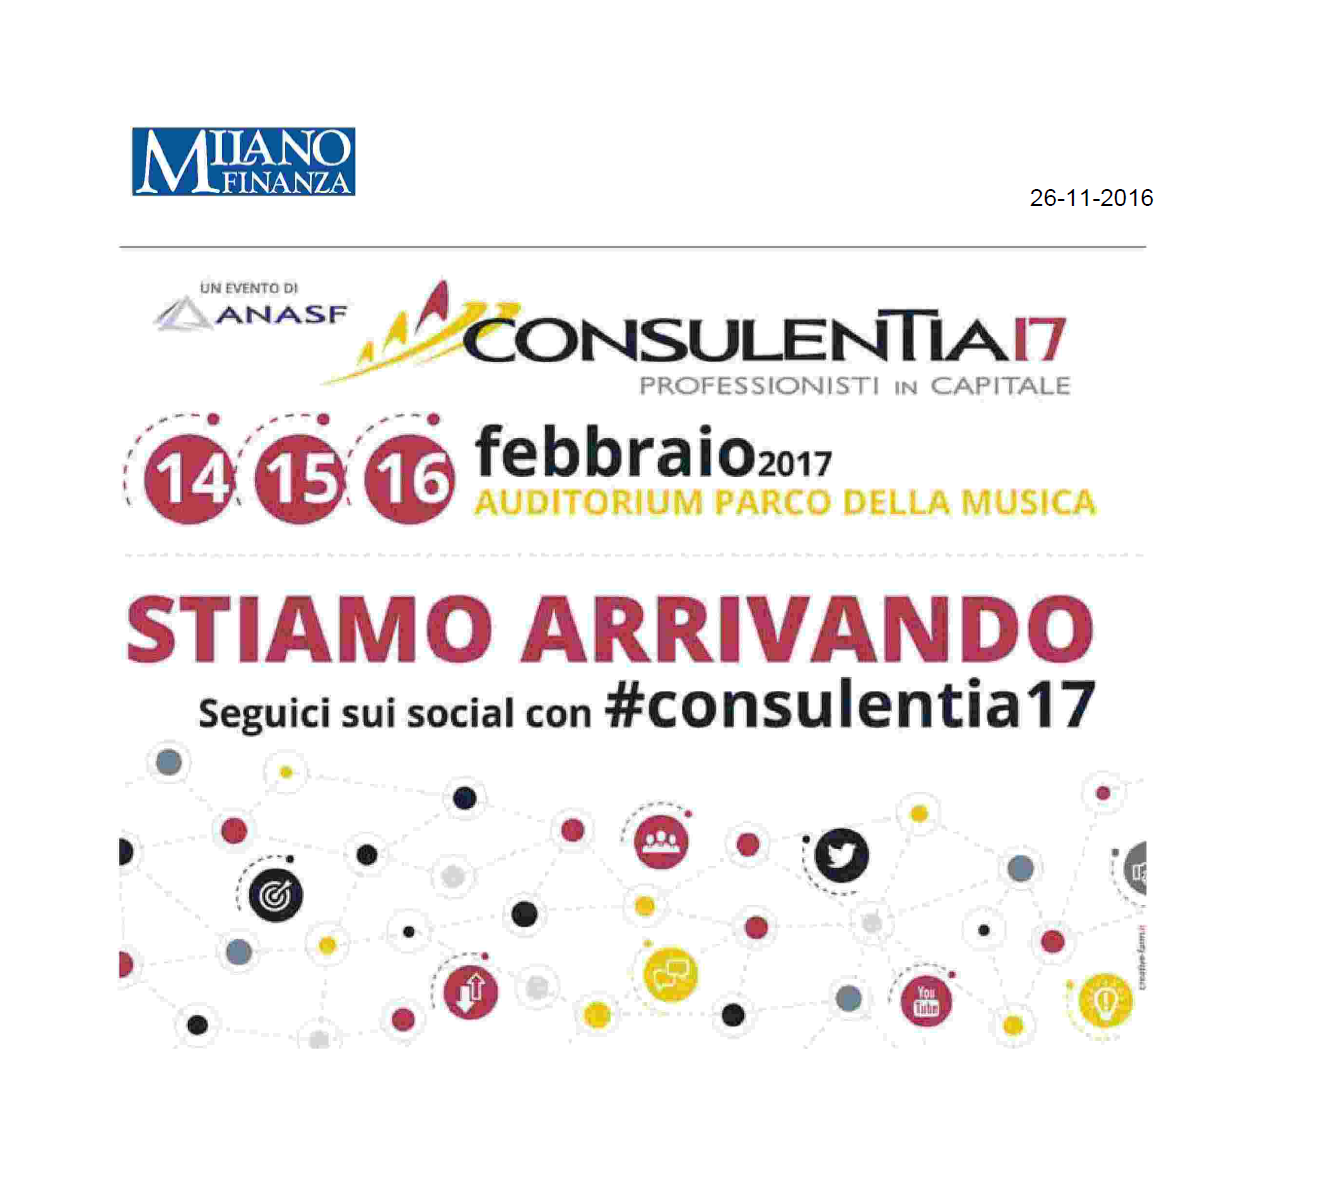 ConsulenTia2017 è su Milano Finanza